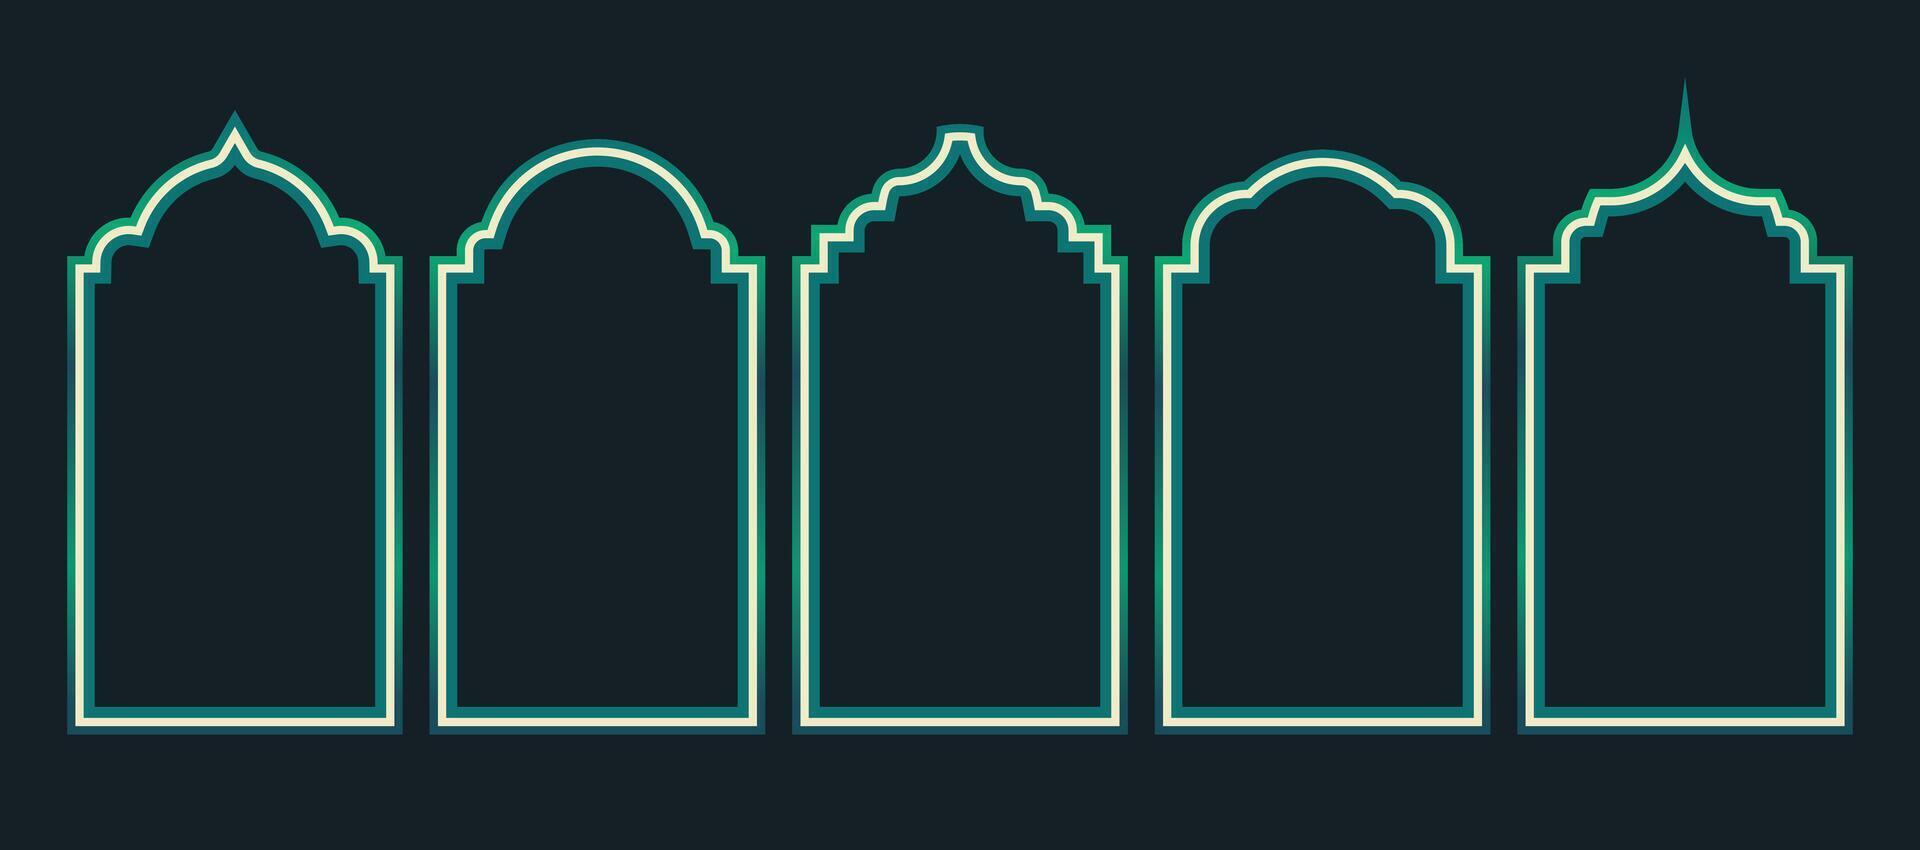 Islamitisch deur venster kader. vector ontwerp elementen van Ramadan kareem en eid mubarak groet